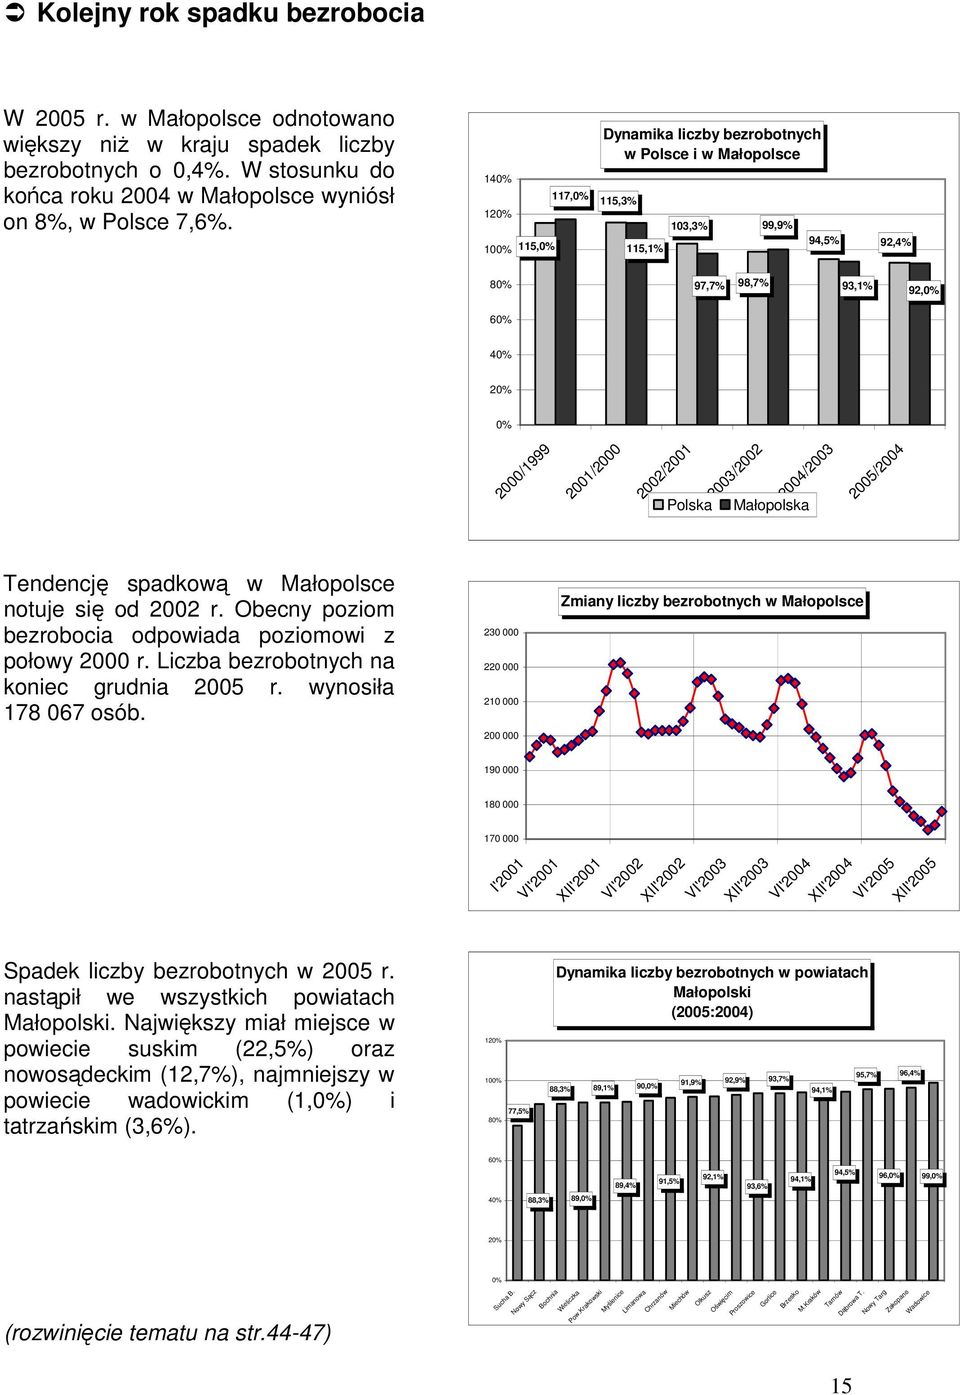 Polska 2003/2002 Małopolska 2004/2003 2005/2004 Tendencję spadkową w Małopolsce notuje się od 2002 r. Obecny poziom bezrobocia odpowiada poziomowi z połowy 2000 r.